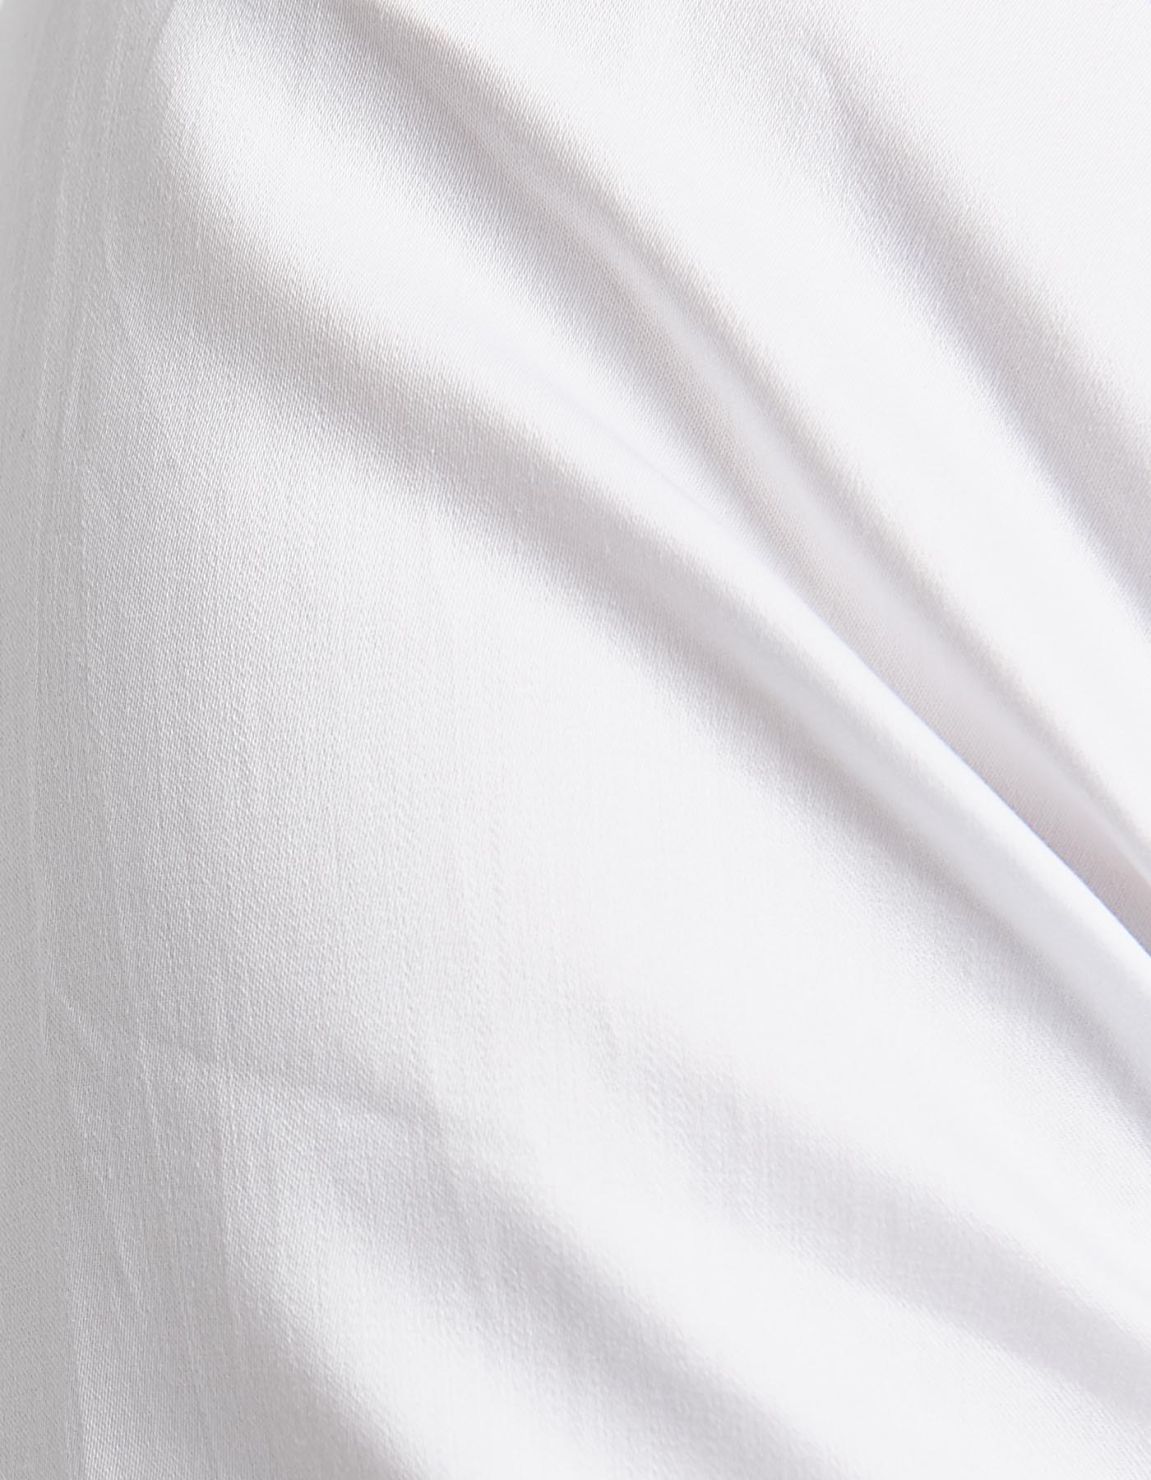 Camisa Cuello diplomático Blanco Tela Liso Slim Fit 2